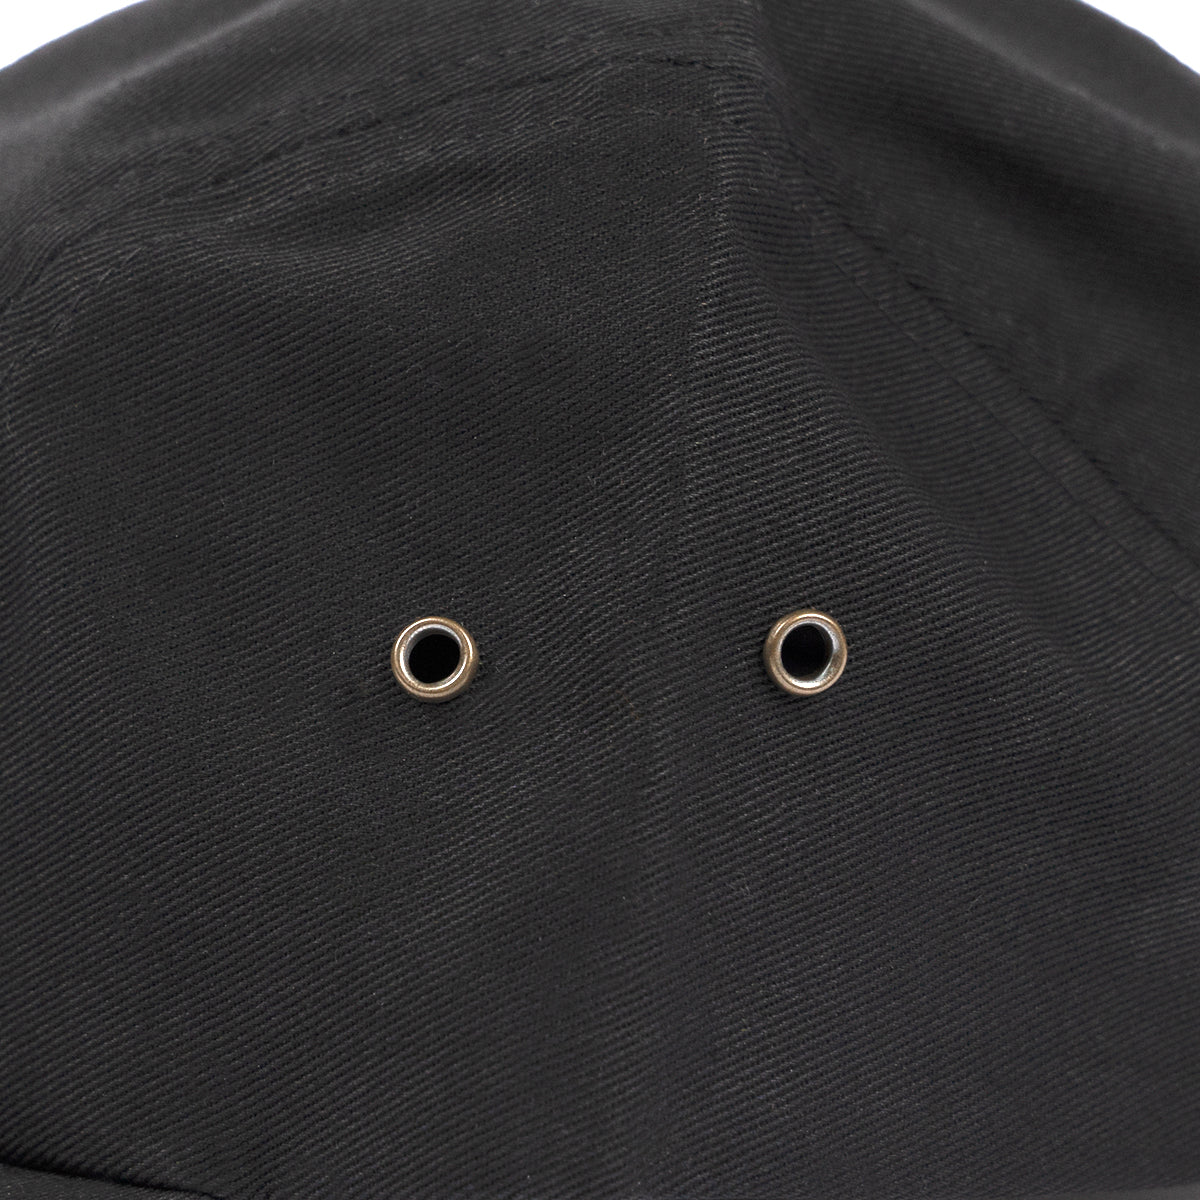 Founder Hat - Black